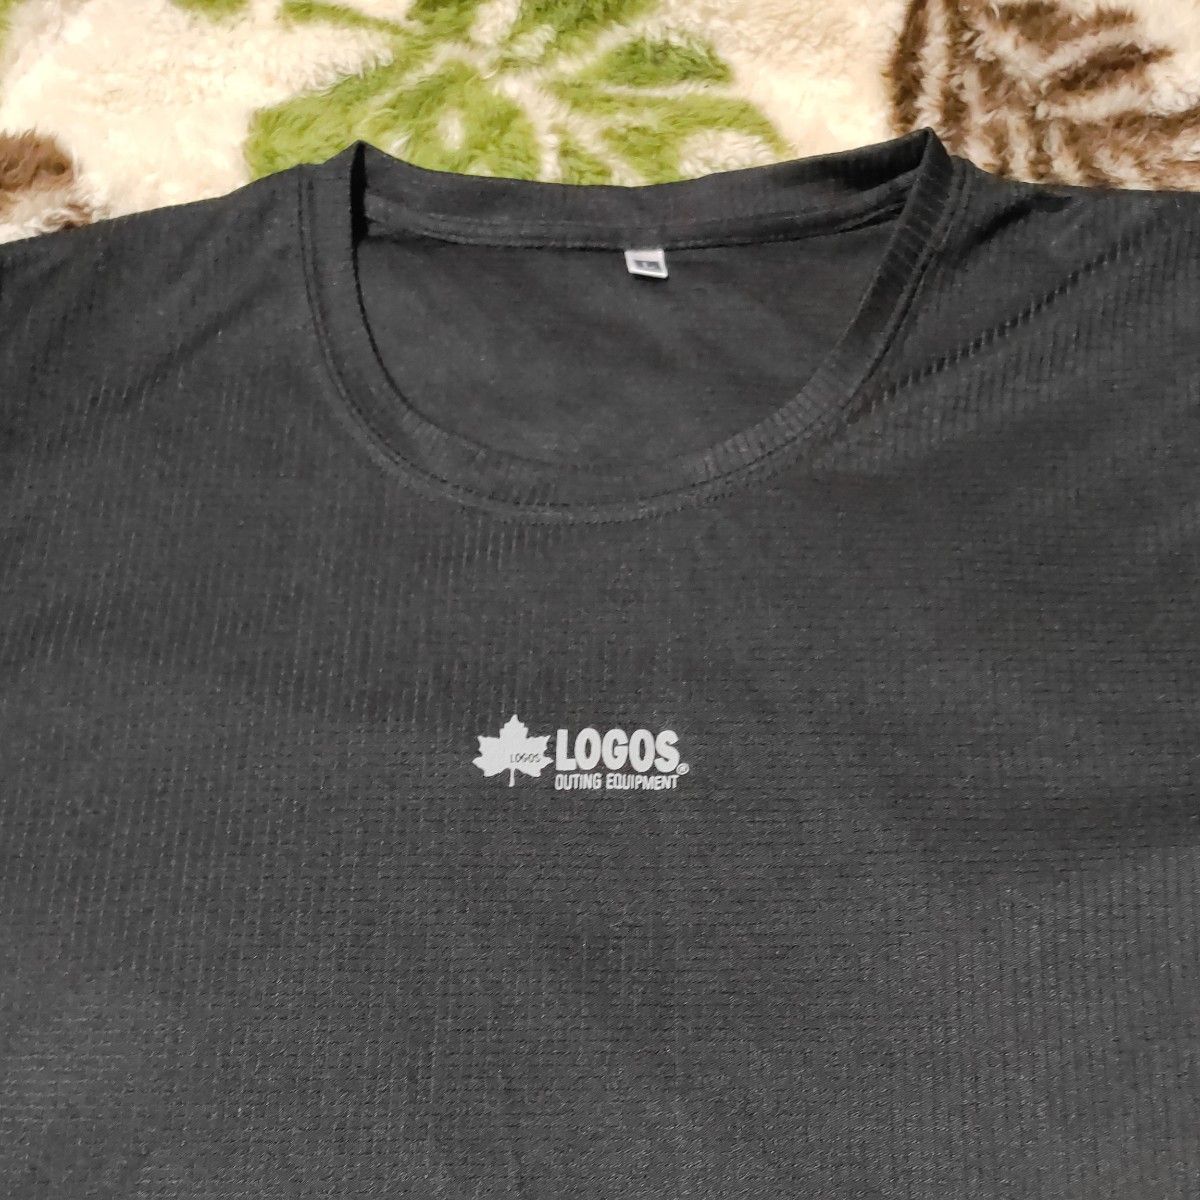 ロゴス LOGOS シーン SCENE 半袖Tシャツ Tシャツ トップス 肌着 下着 黒 ブラック おまとめ 2枚セット